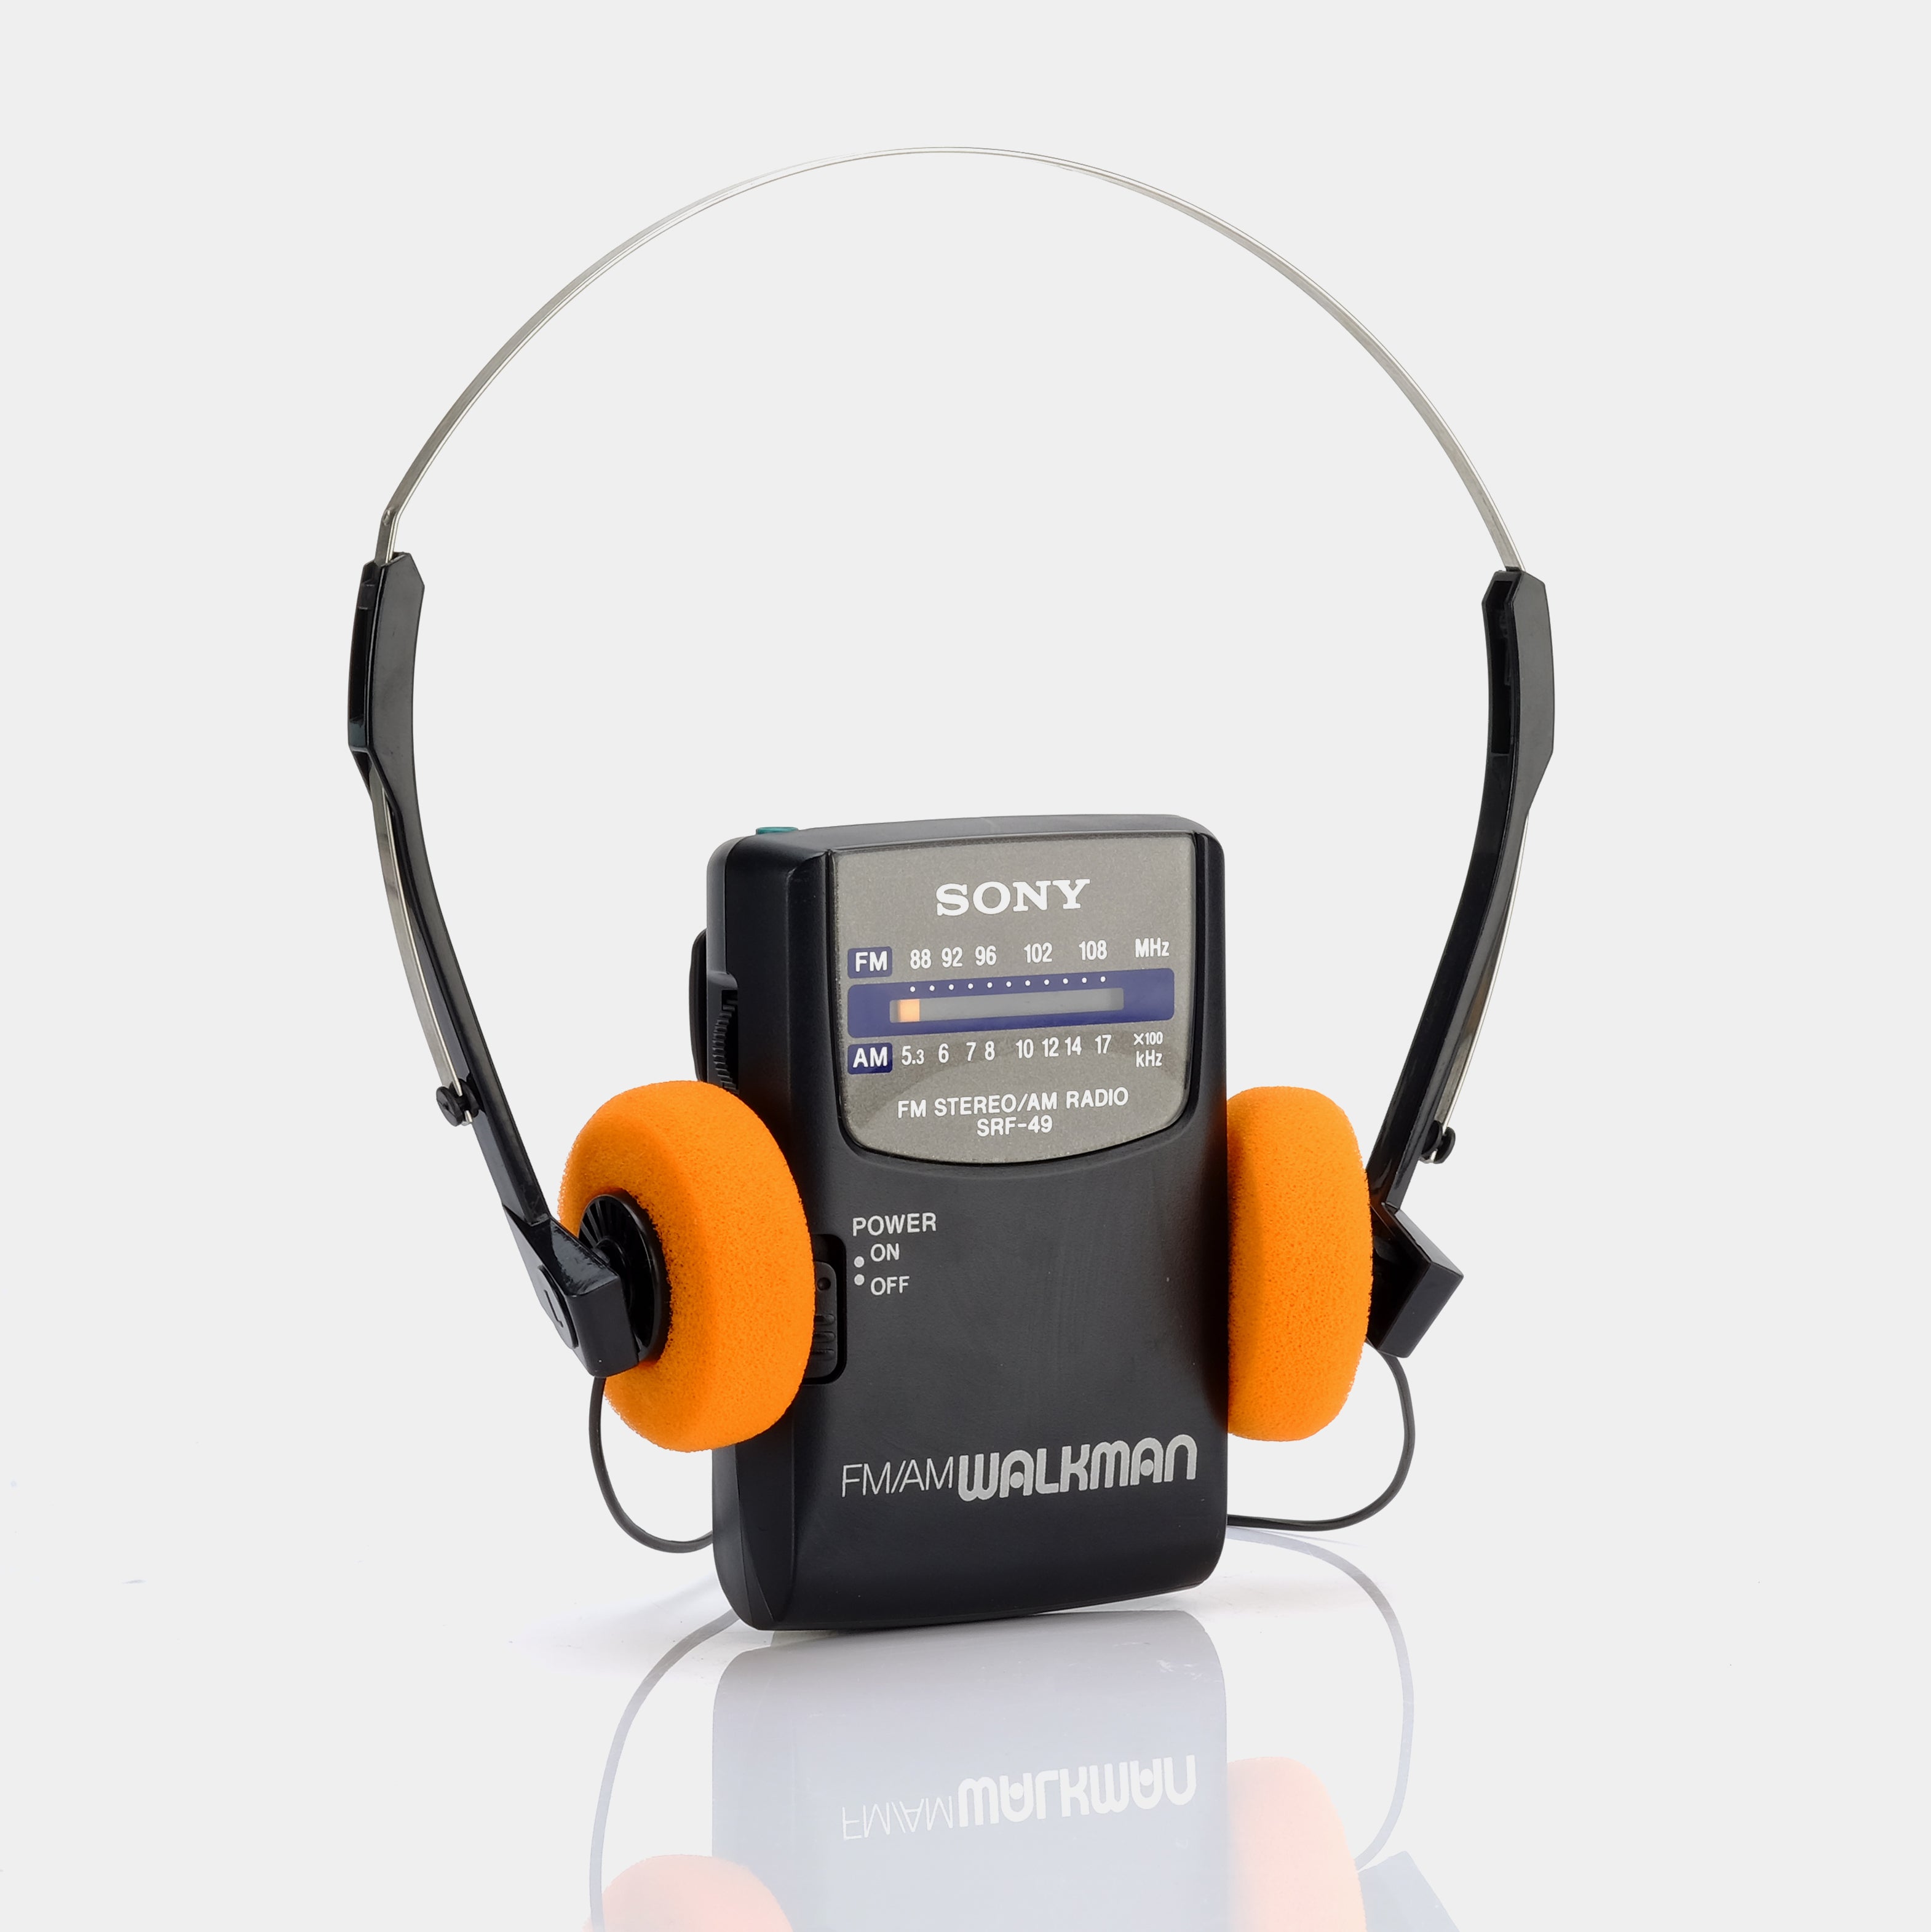 Sony Walkman SRF-49 AM/FM Portable Radio